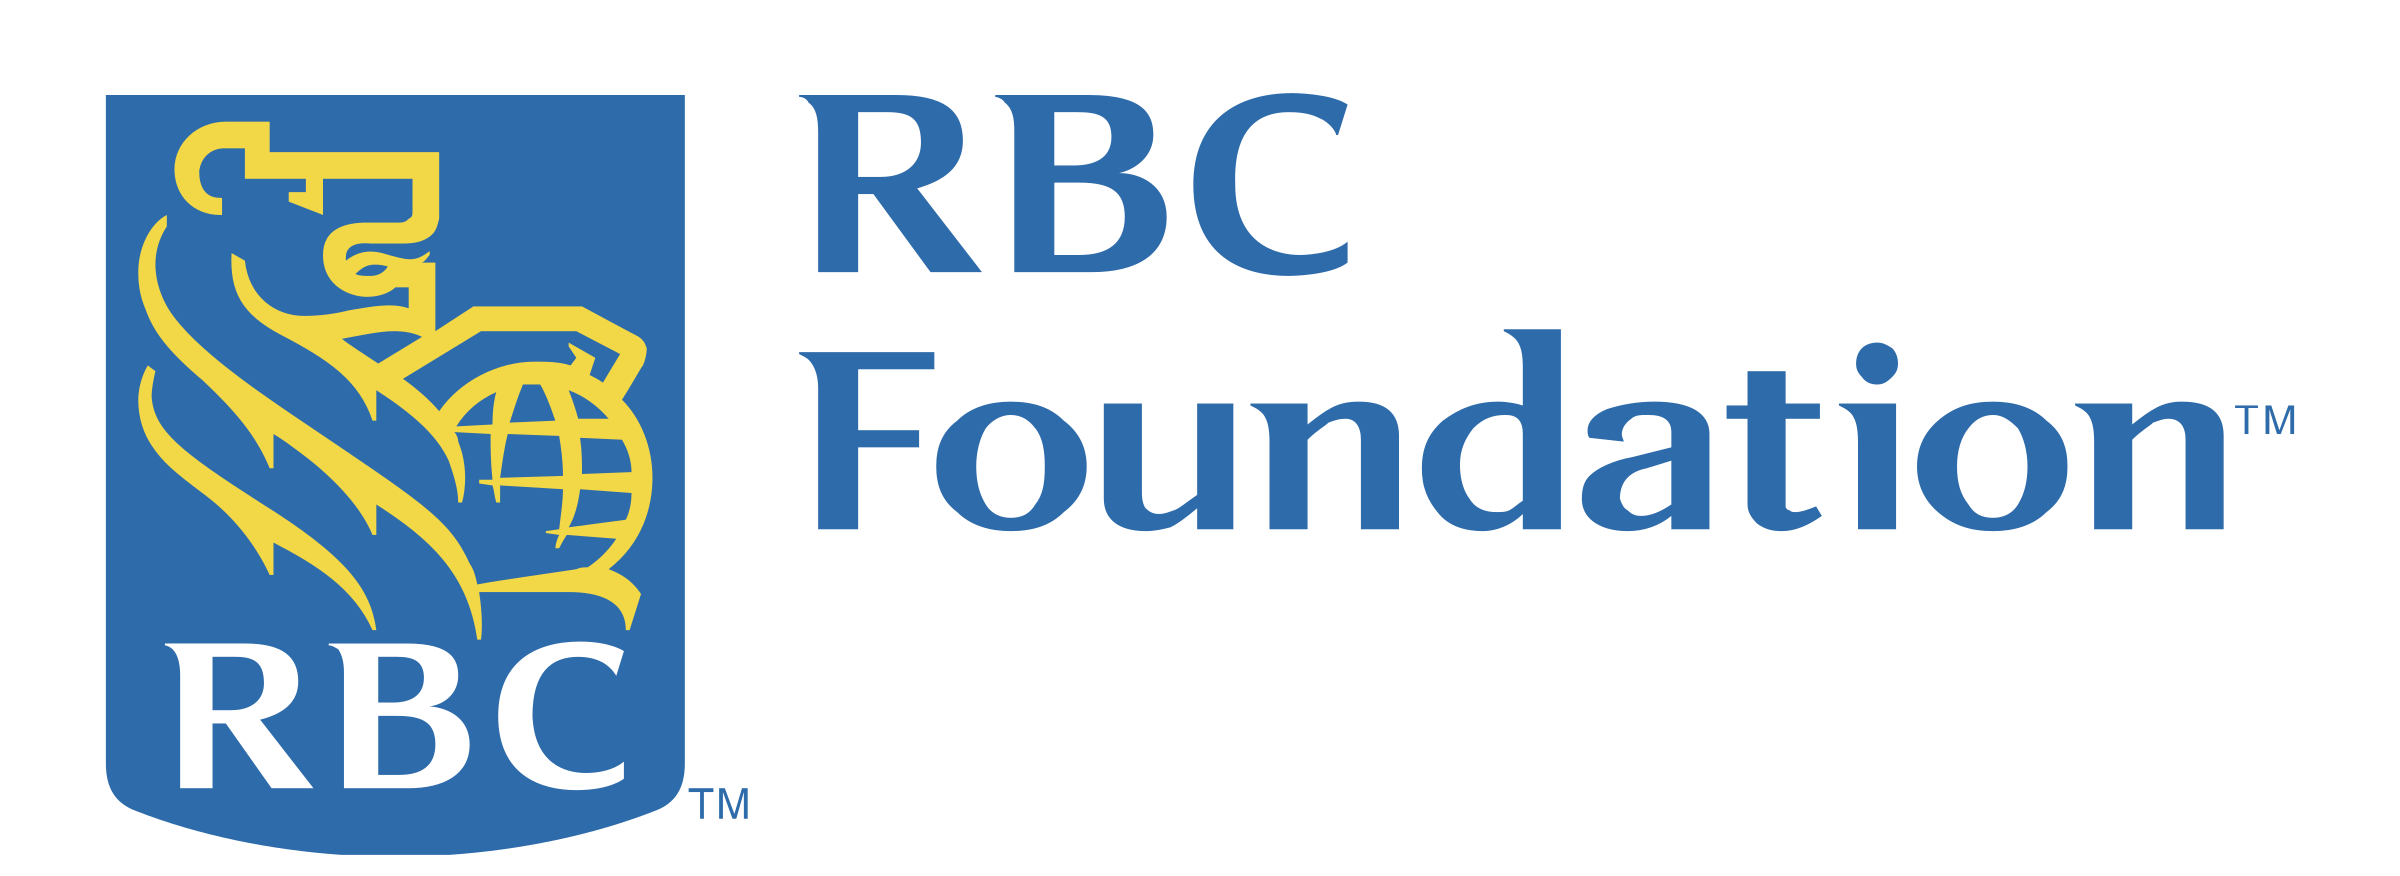 rbc foundation logo png transparent e1590513367355